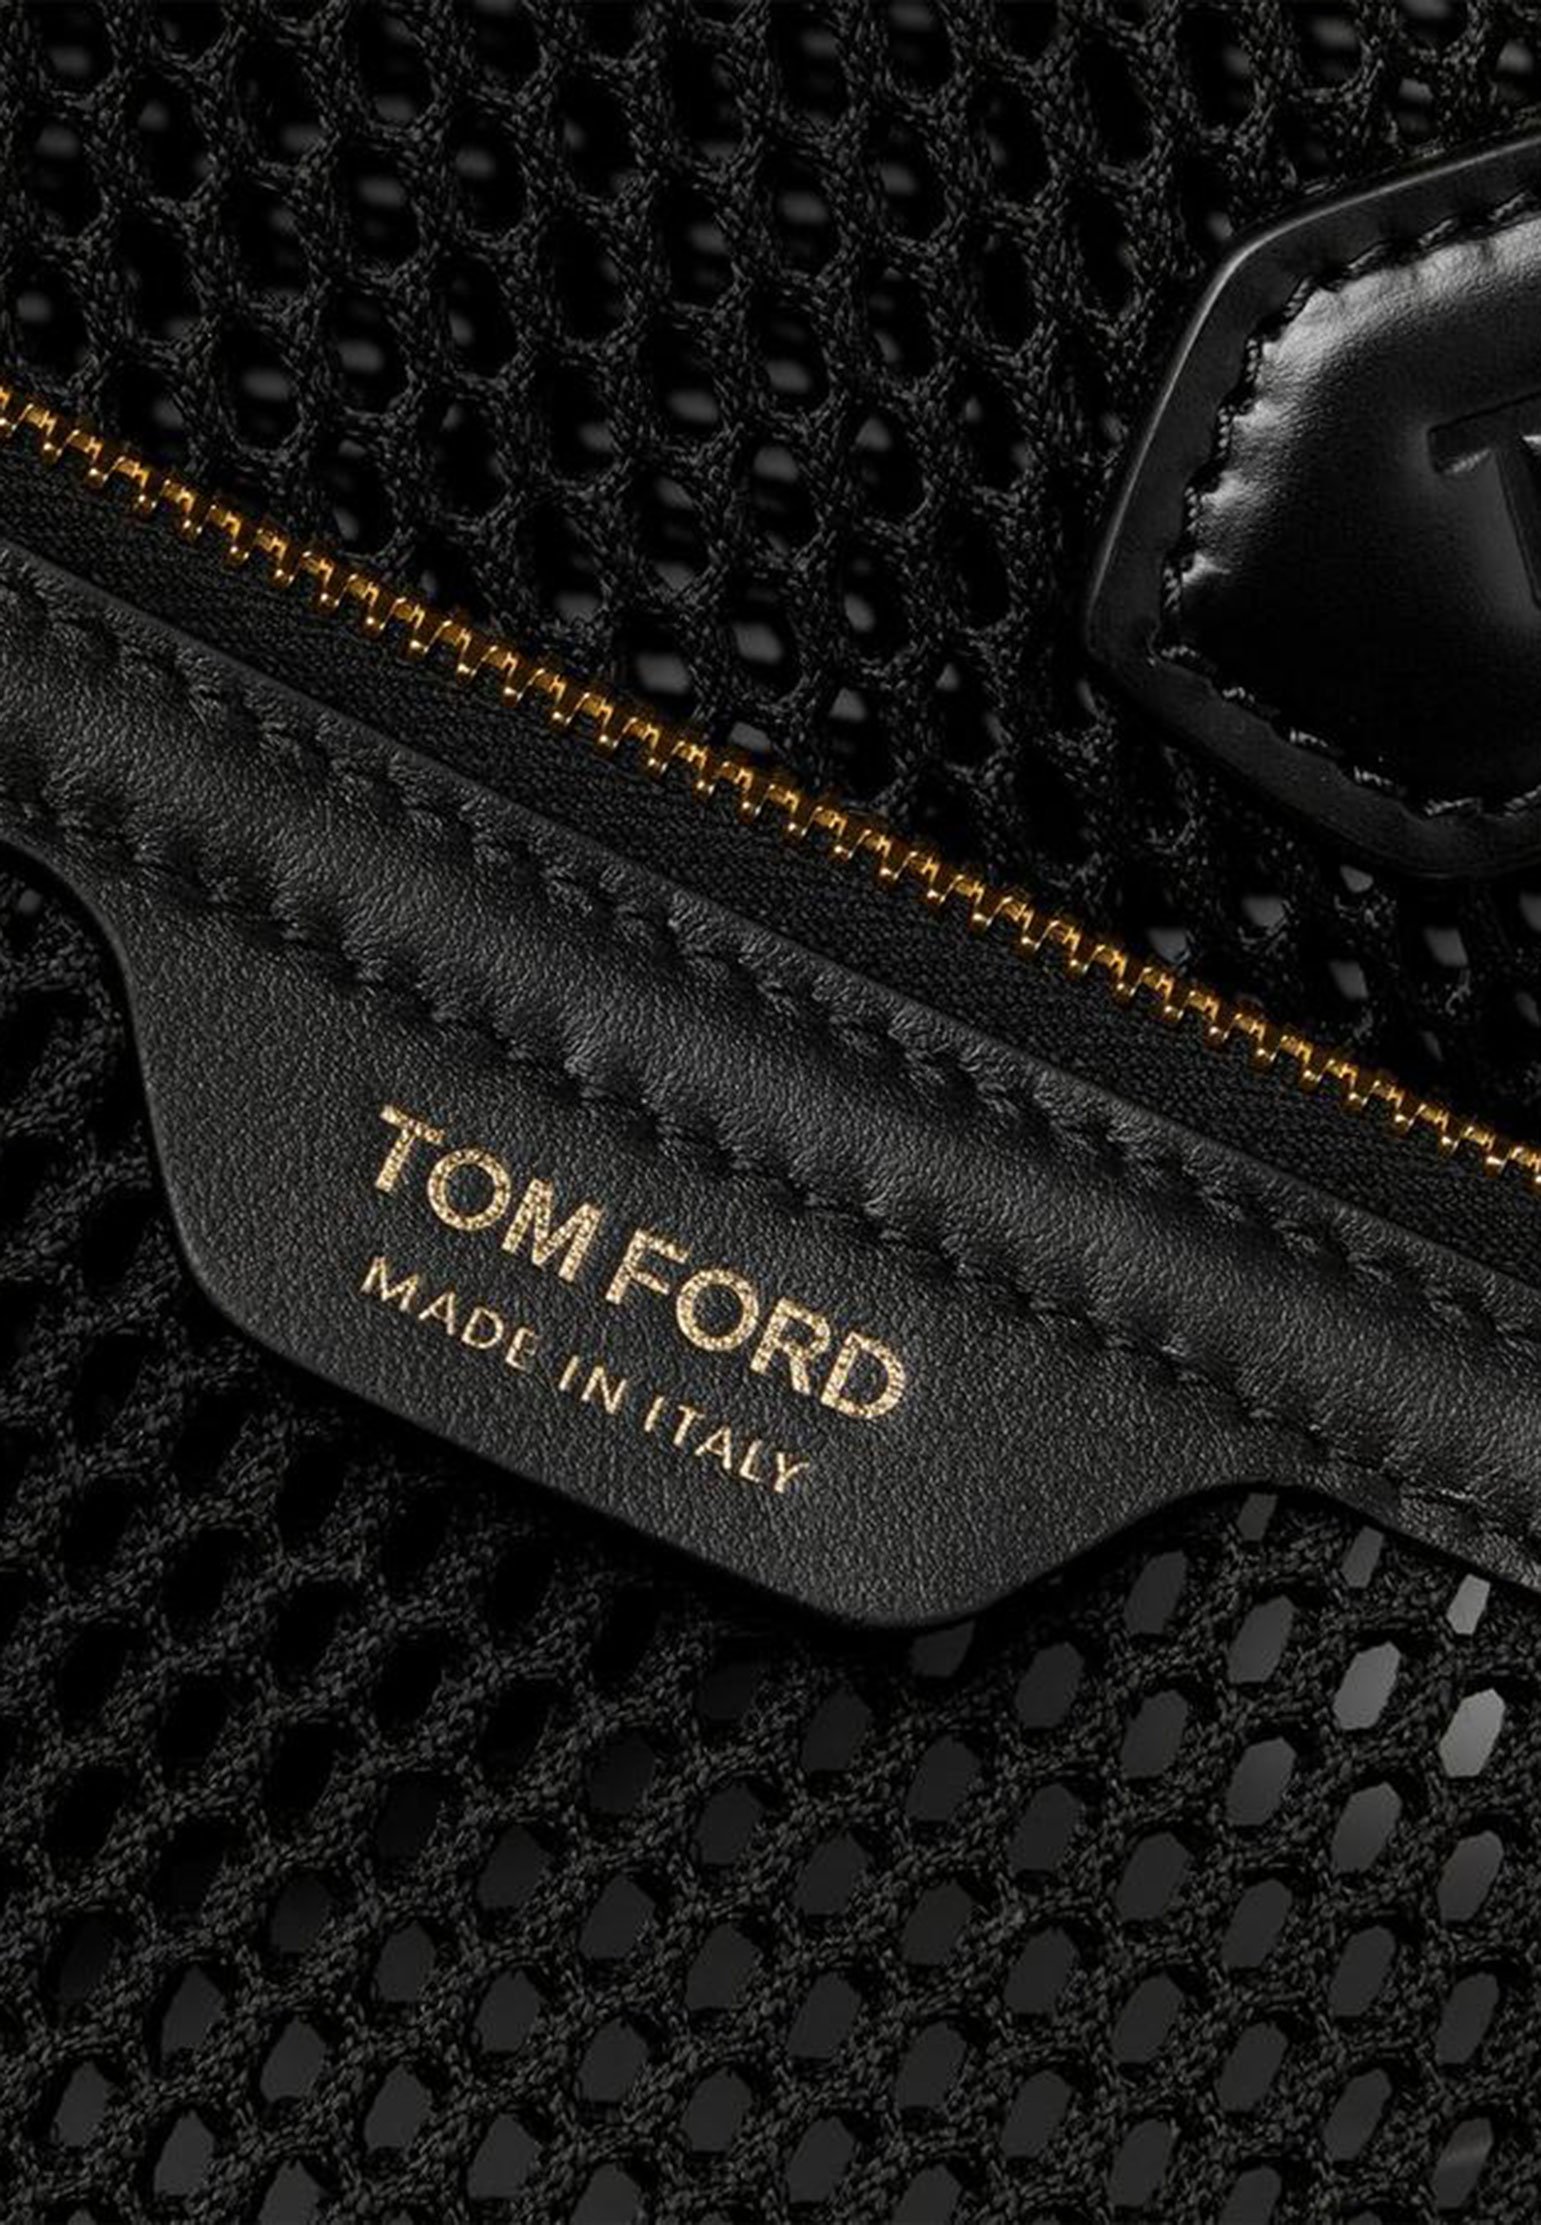 Bag TOM FORD Color: black (Code: 2149) in online store Allure